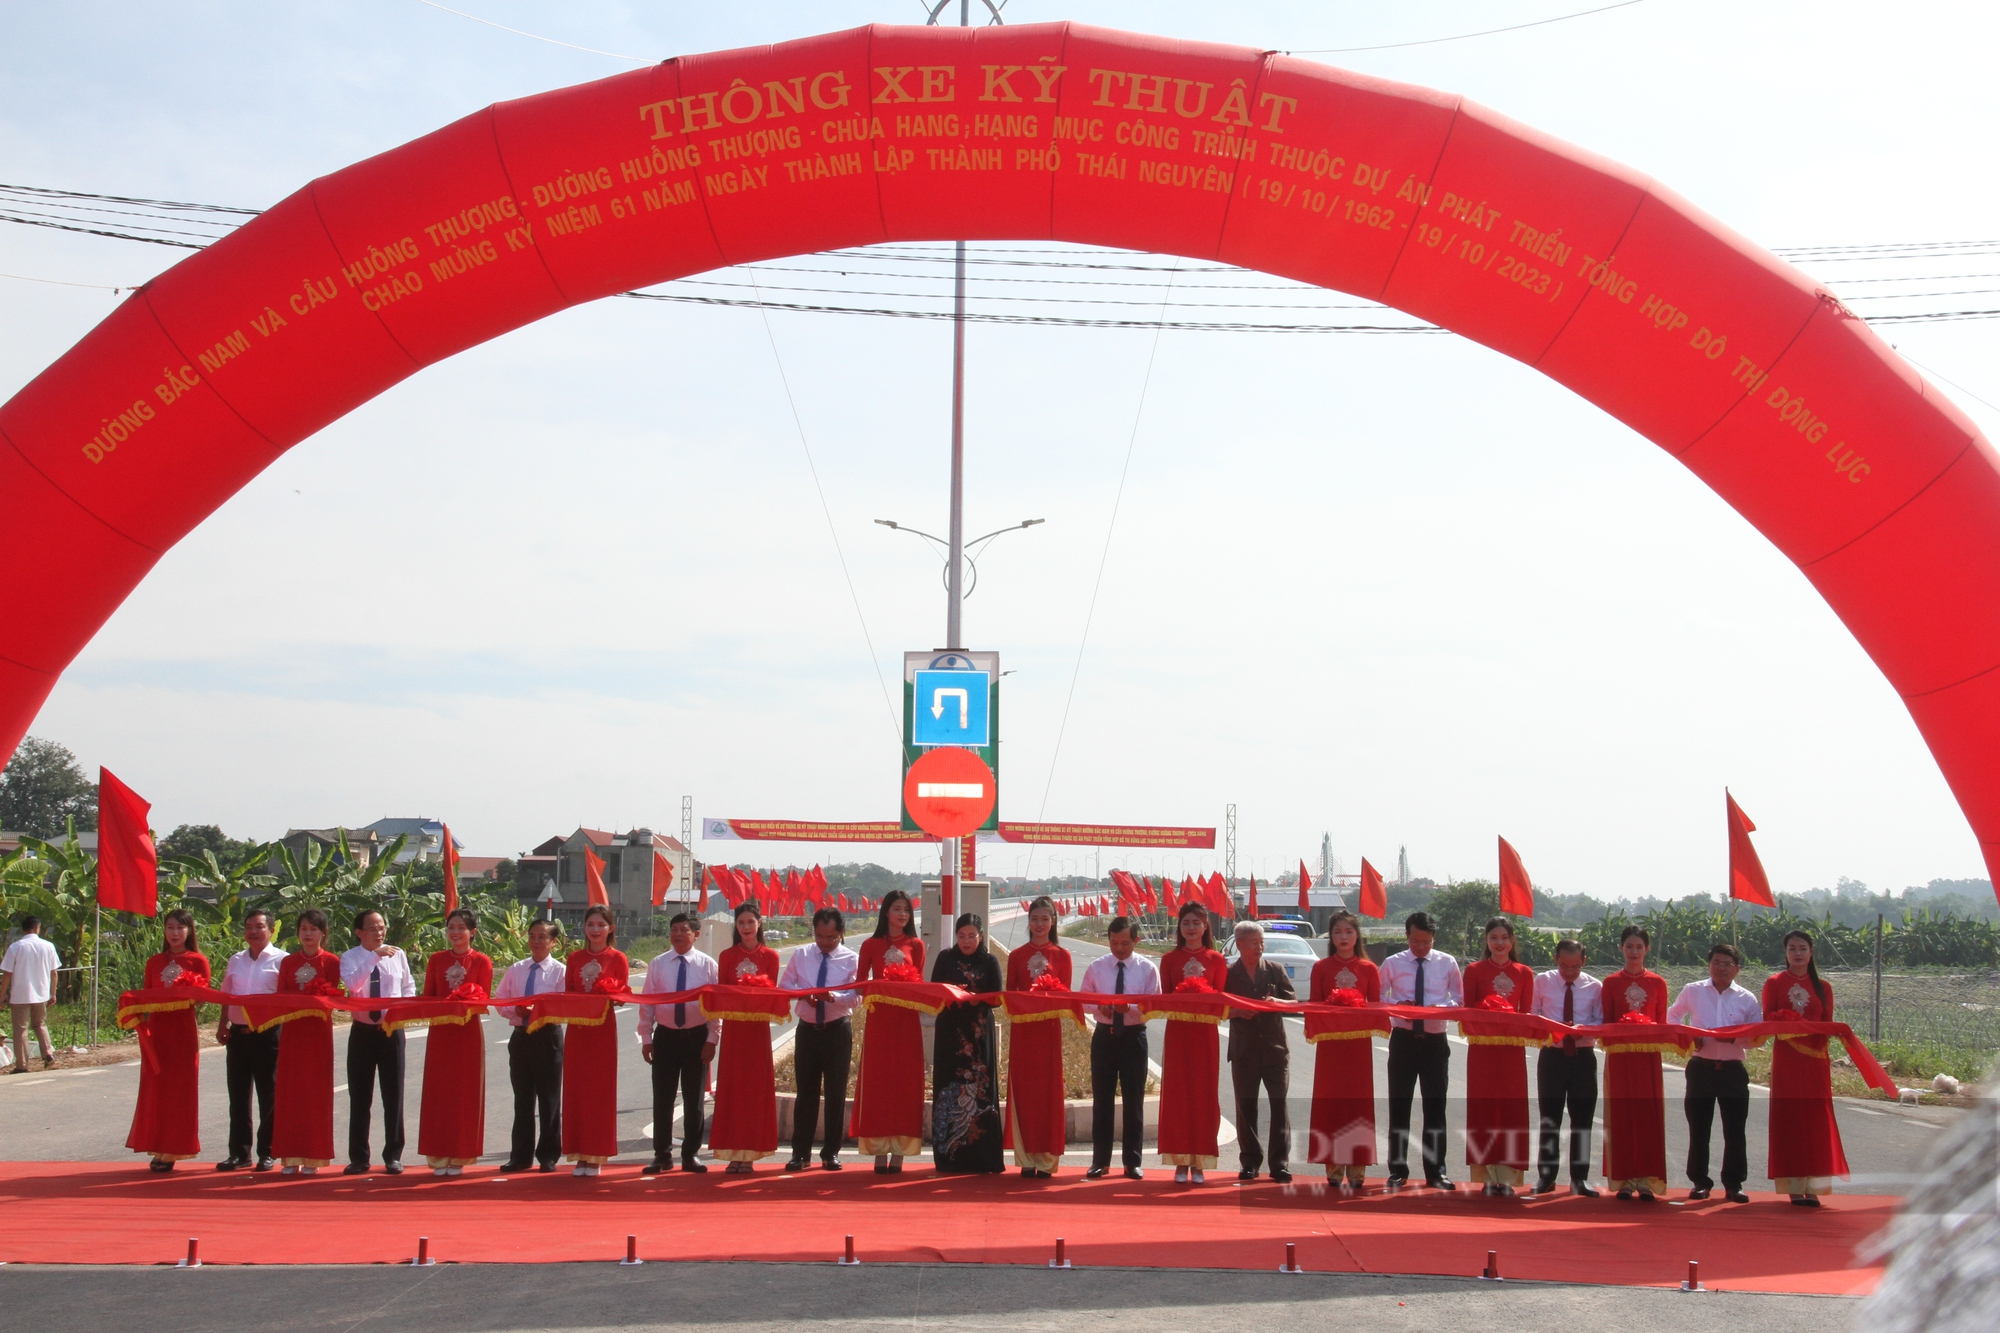 Thông xe cây cầu lớn nhất Thái Nguyên, mở ra nhiều tiềm tăng phát triển kinh tế - xã hội địa phương - Ảnh 4.